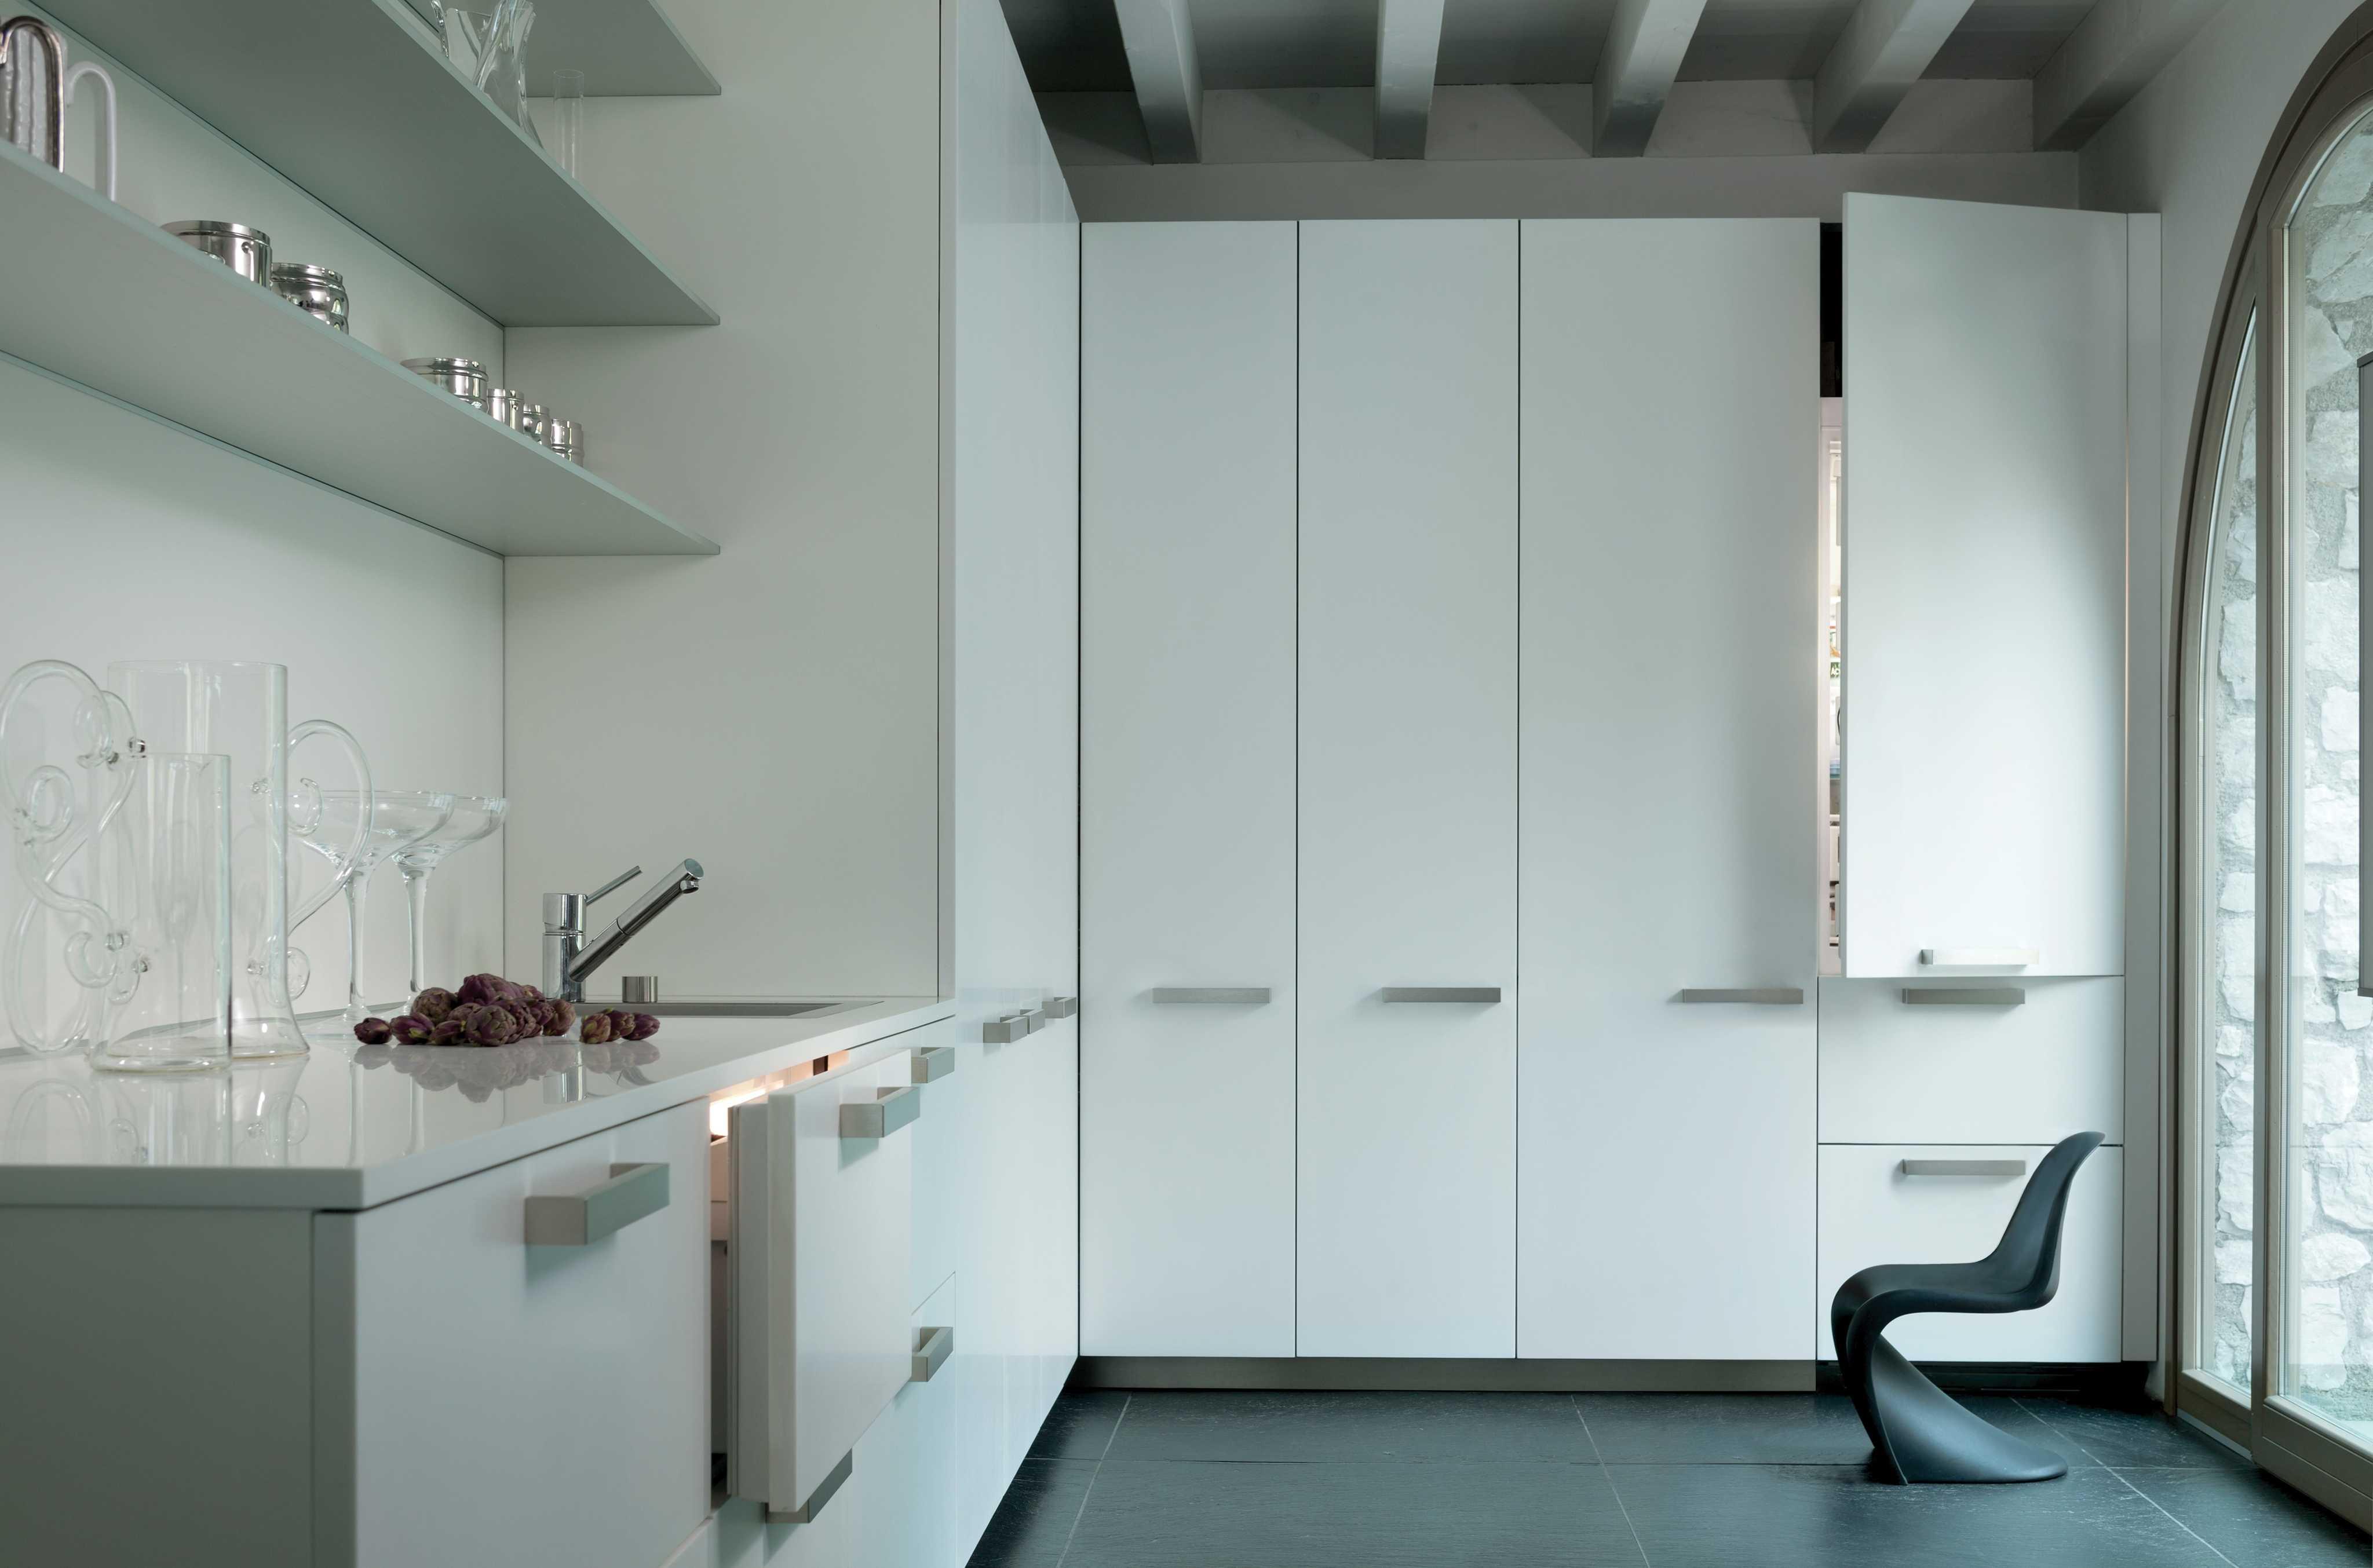 SubZero integriertes Kühlgerät #küche #kühlschrank ©SubZero